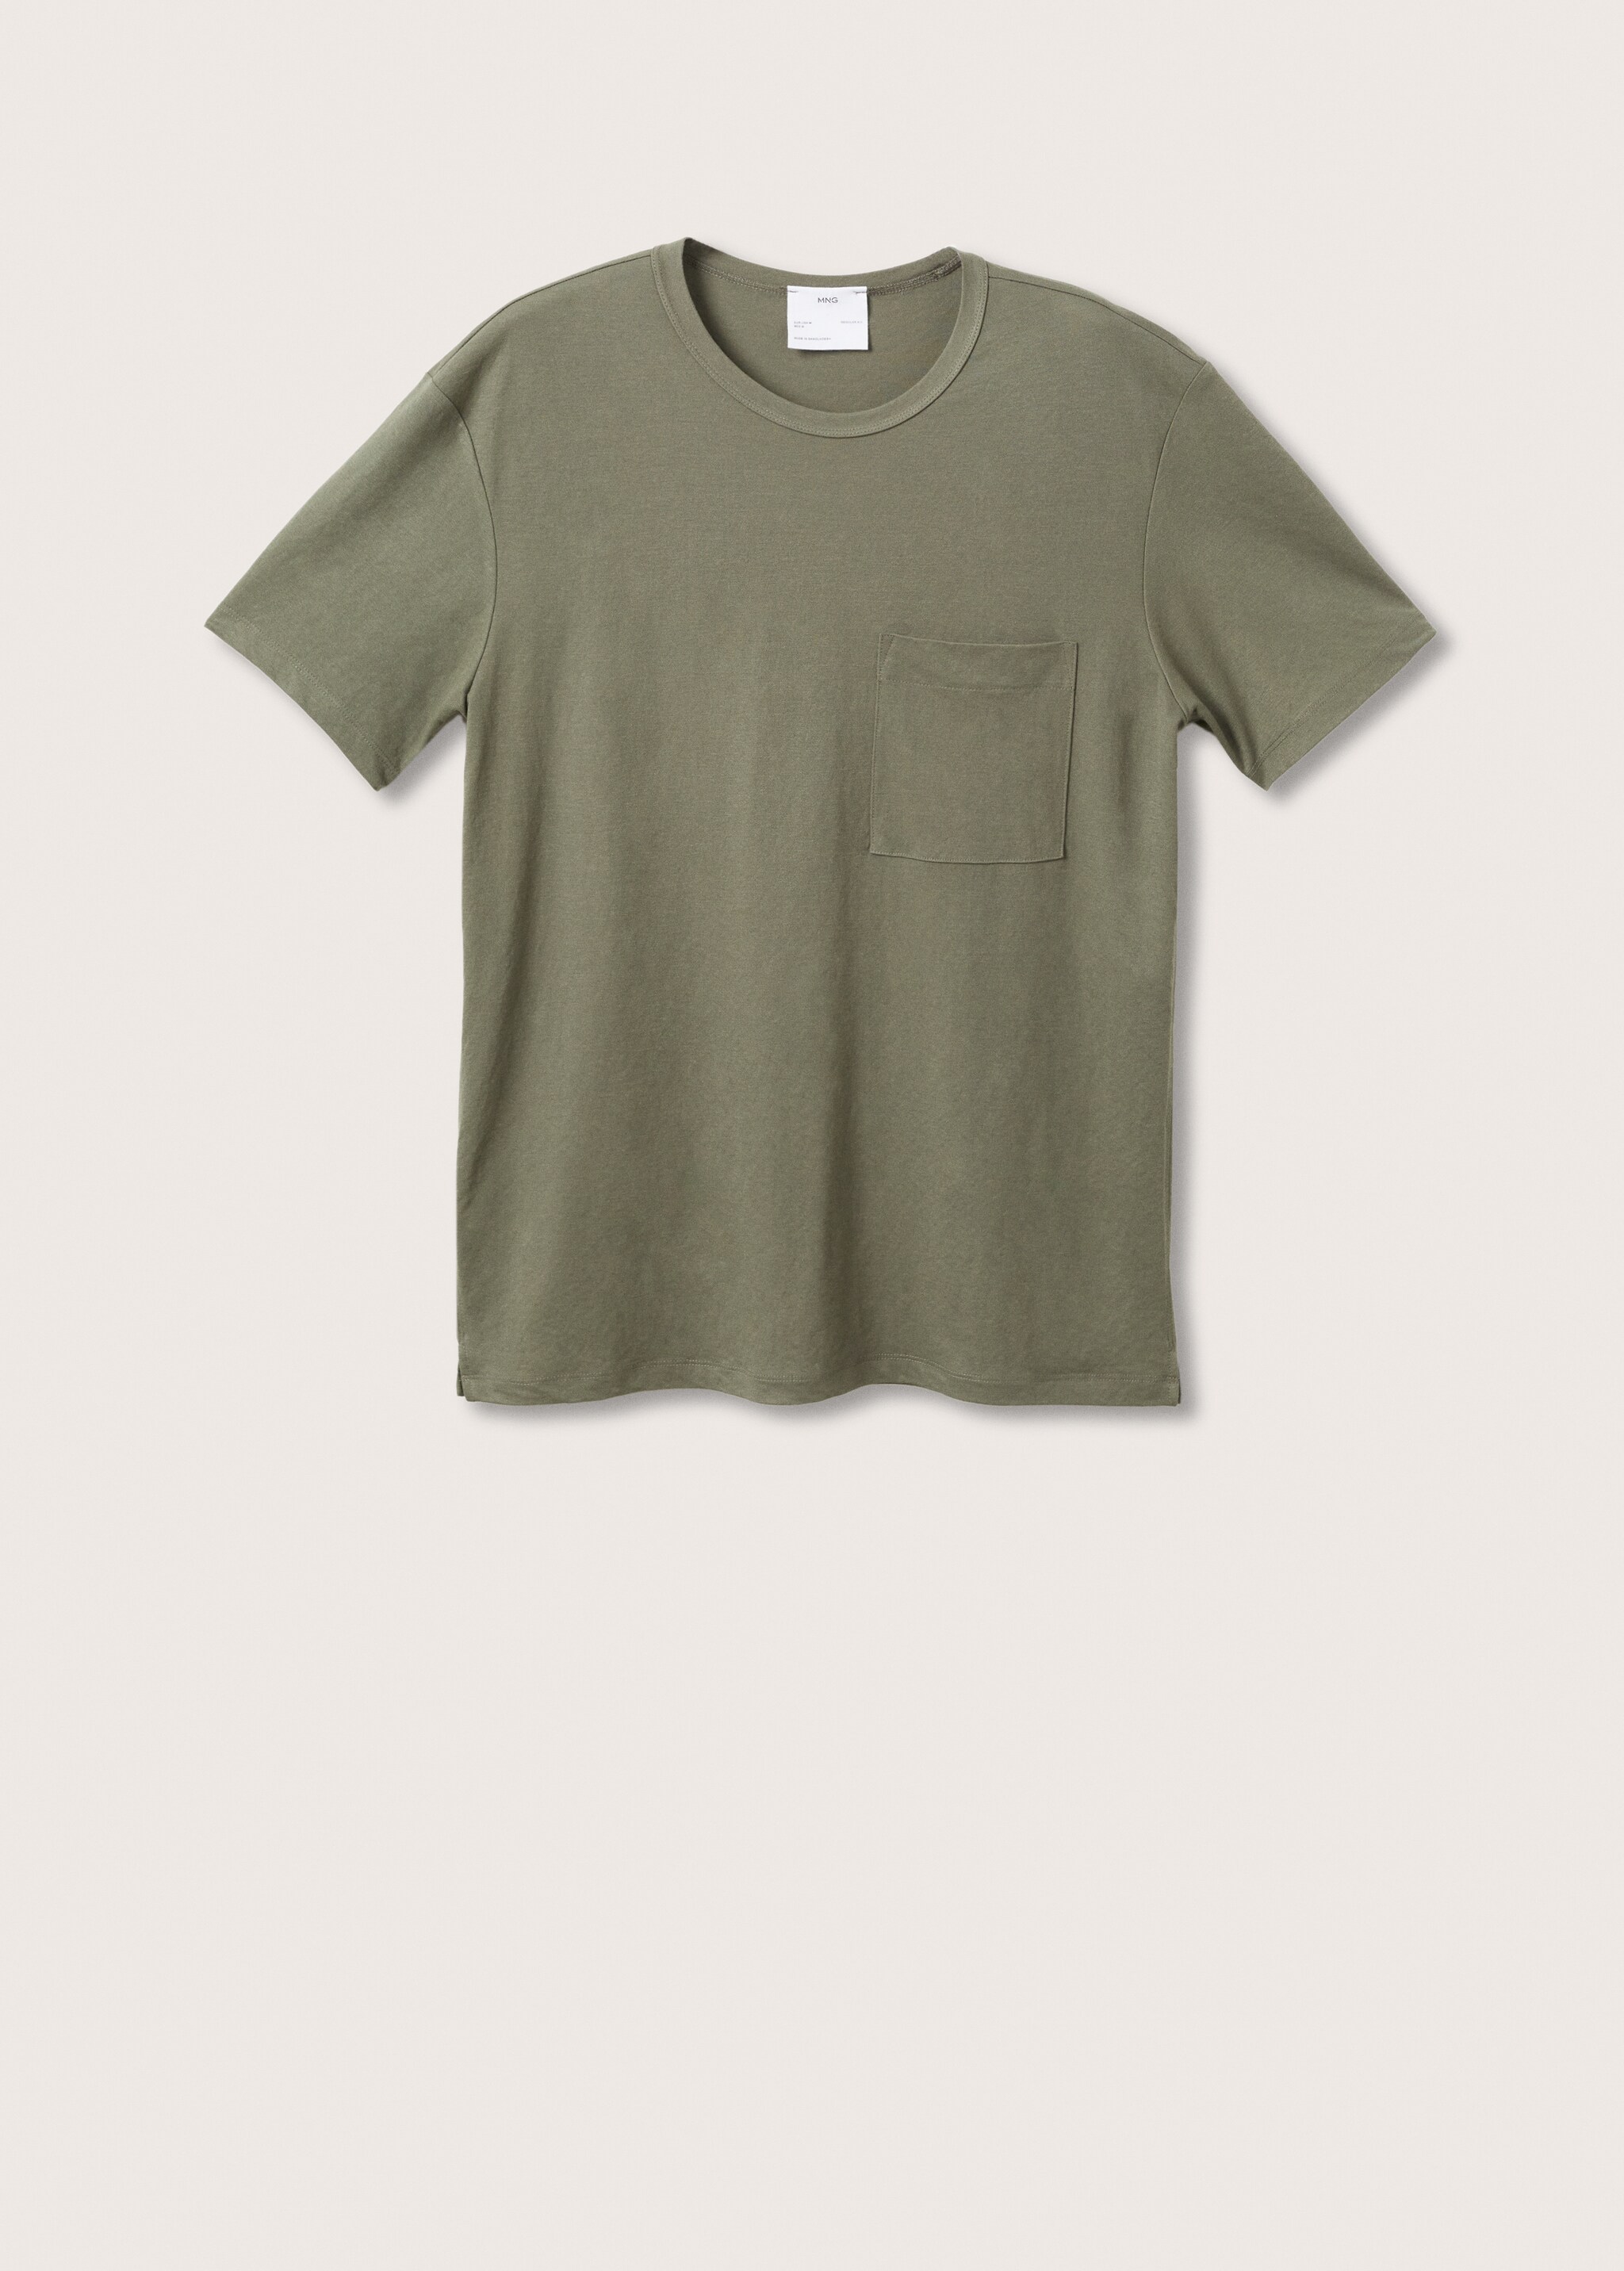 T-shirt léger poche - Article sans modèle